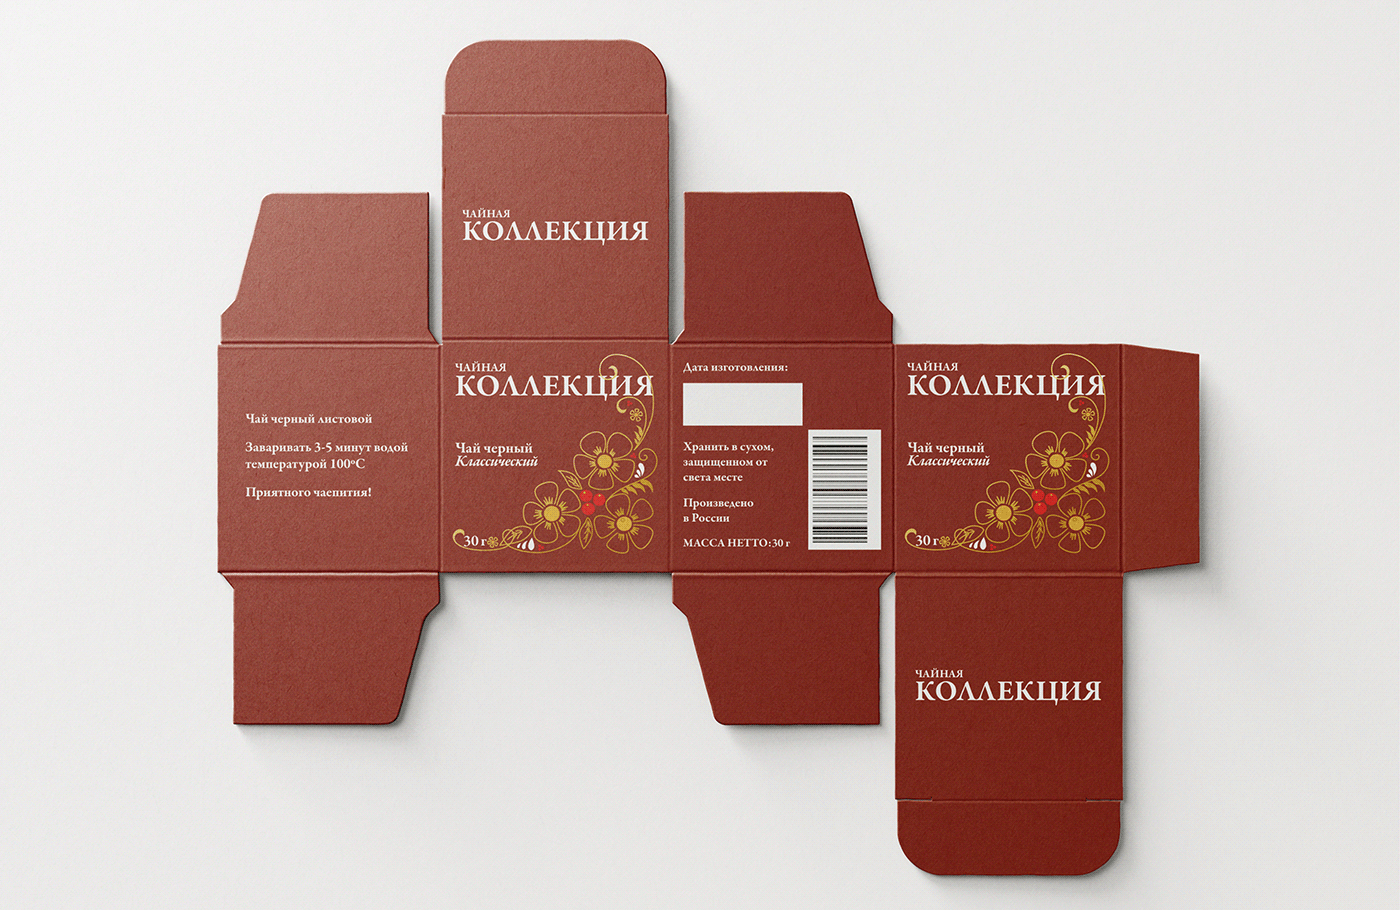 Дизайн пищевой упаковки дизайн упаковки упаковка упаковка чая чай Food Package Design package package design  tea Tea Package